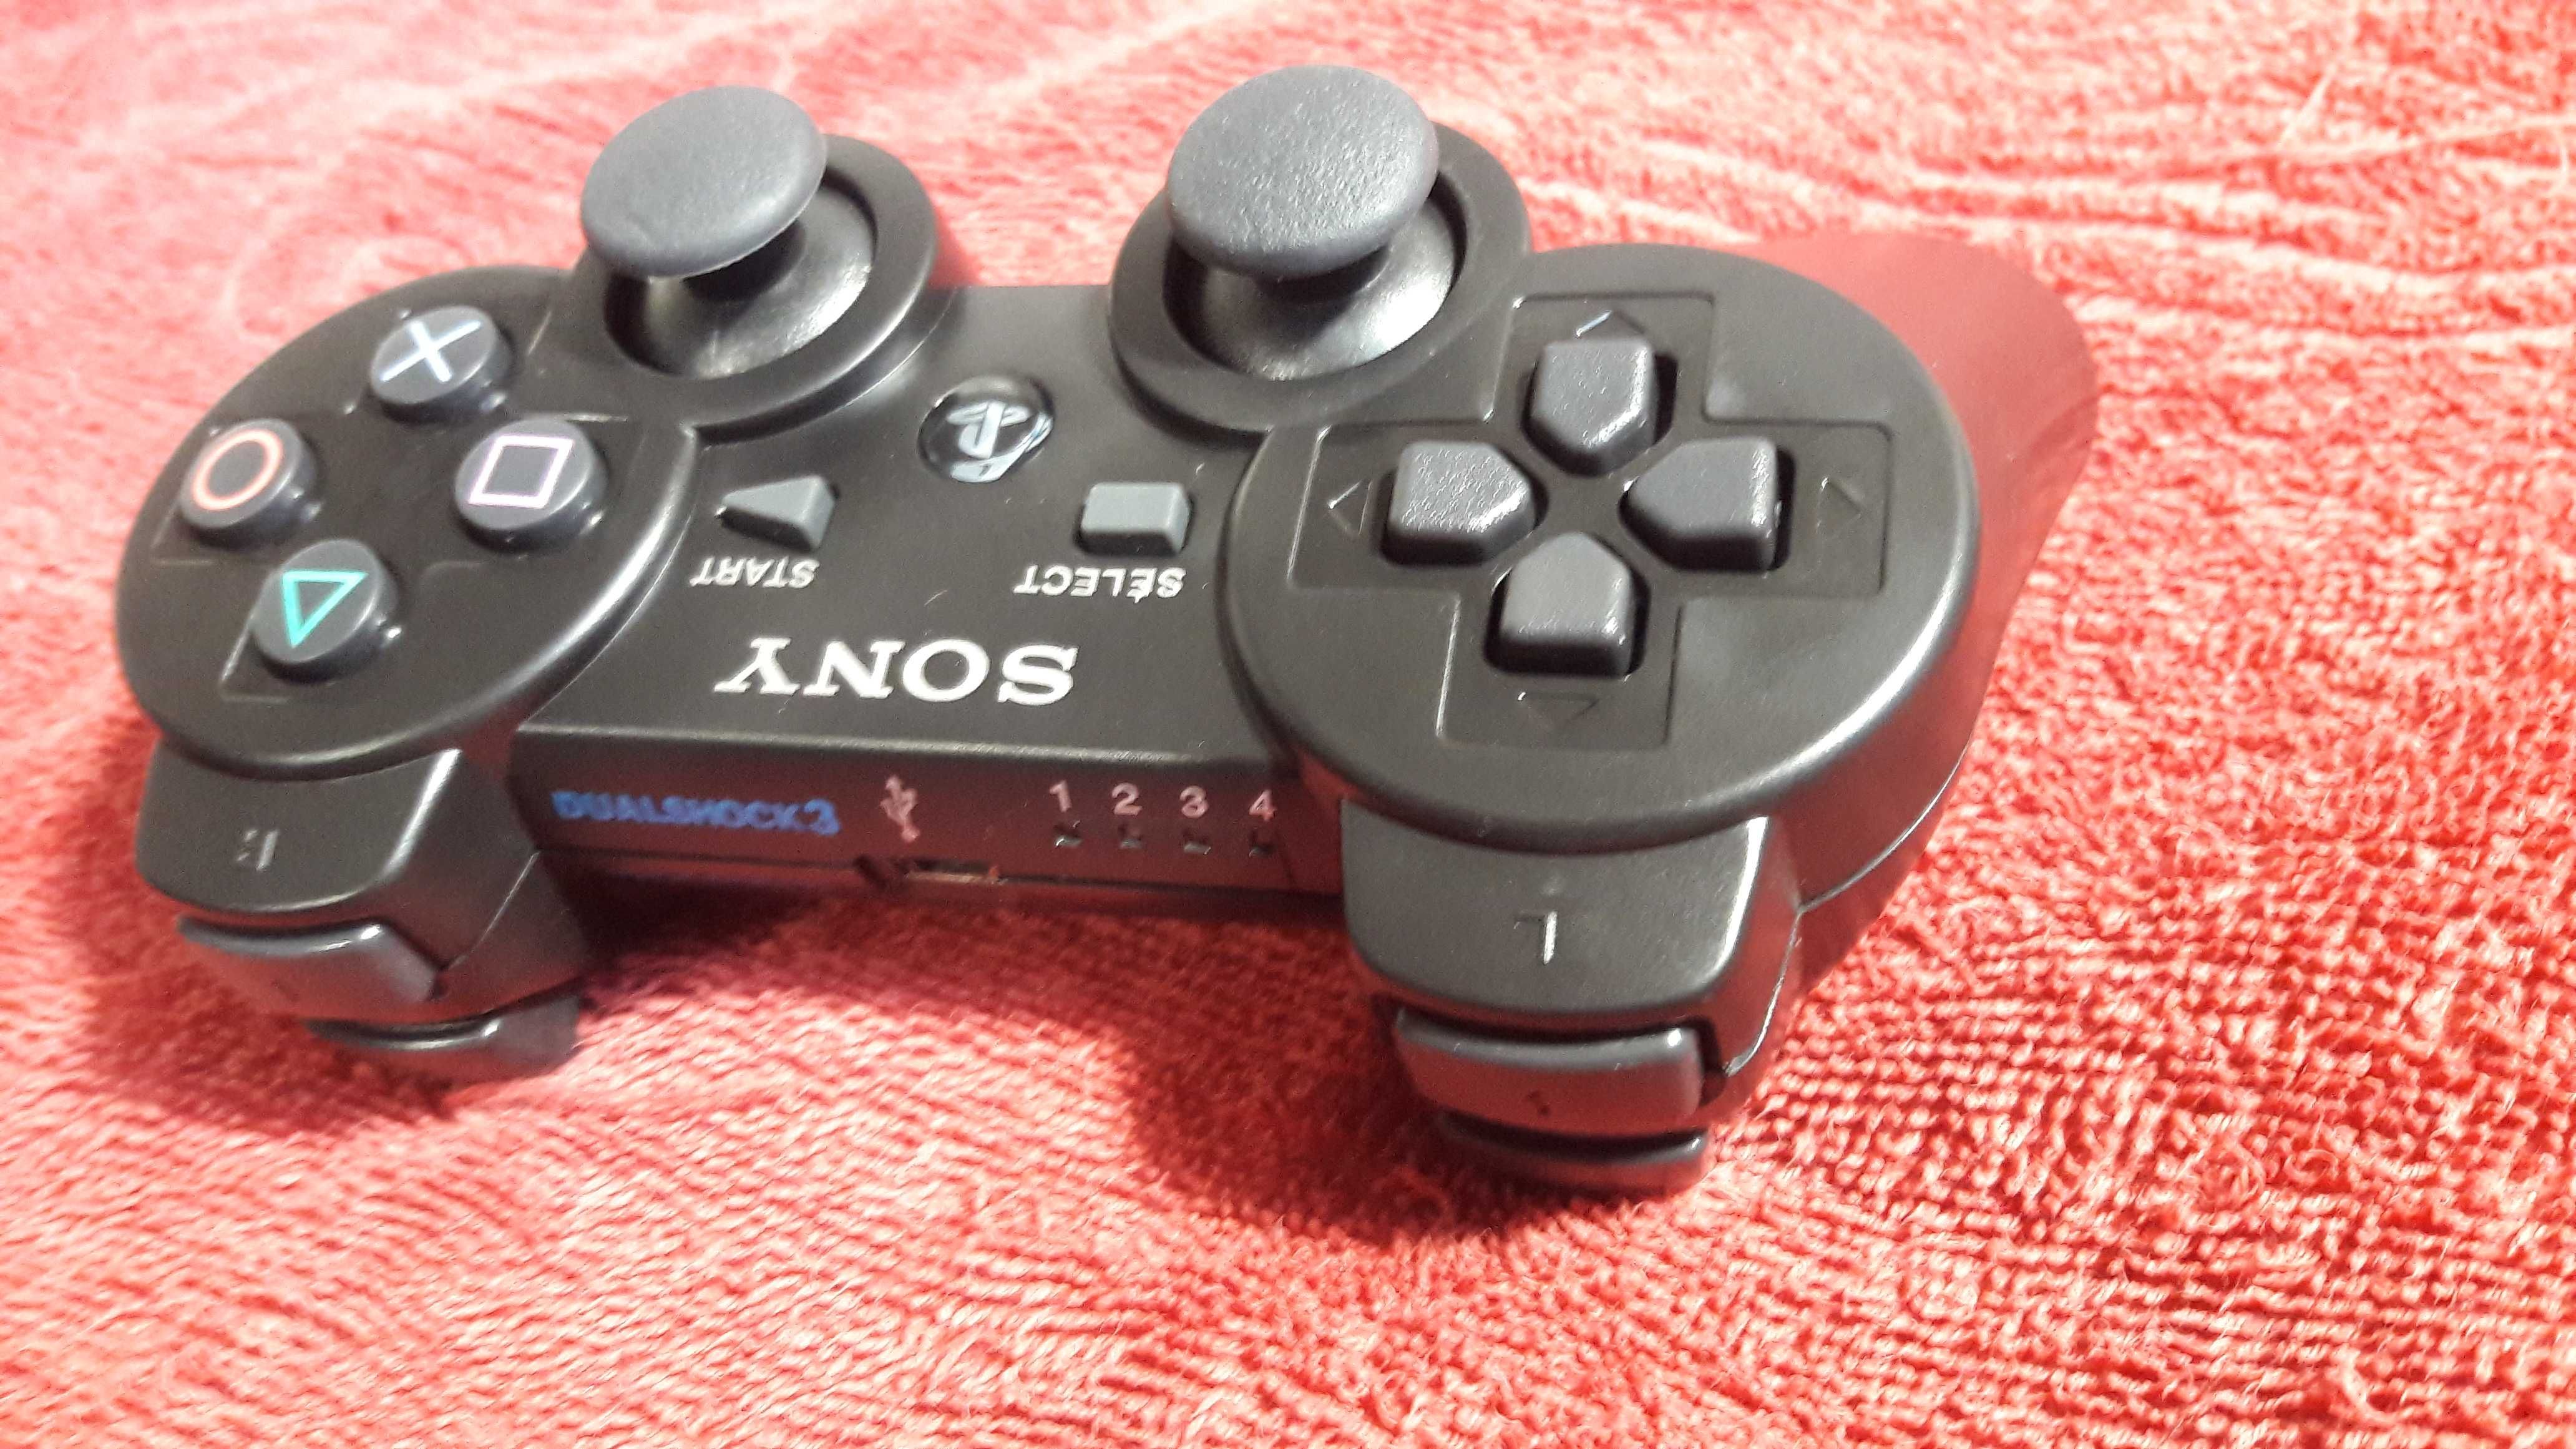 Беспроводной контроллер DualShock 3 для PlayStation 3